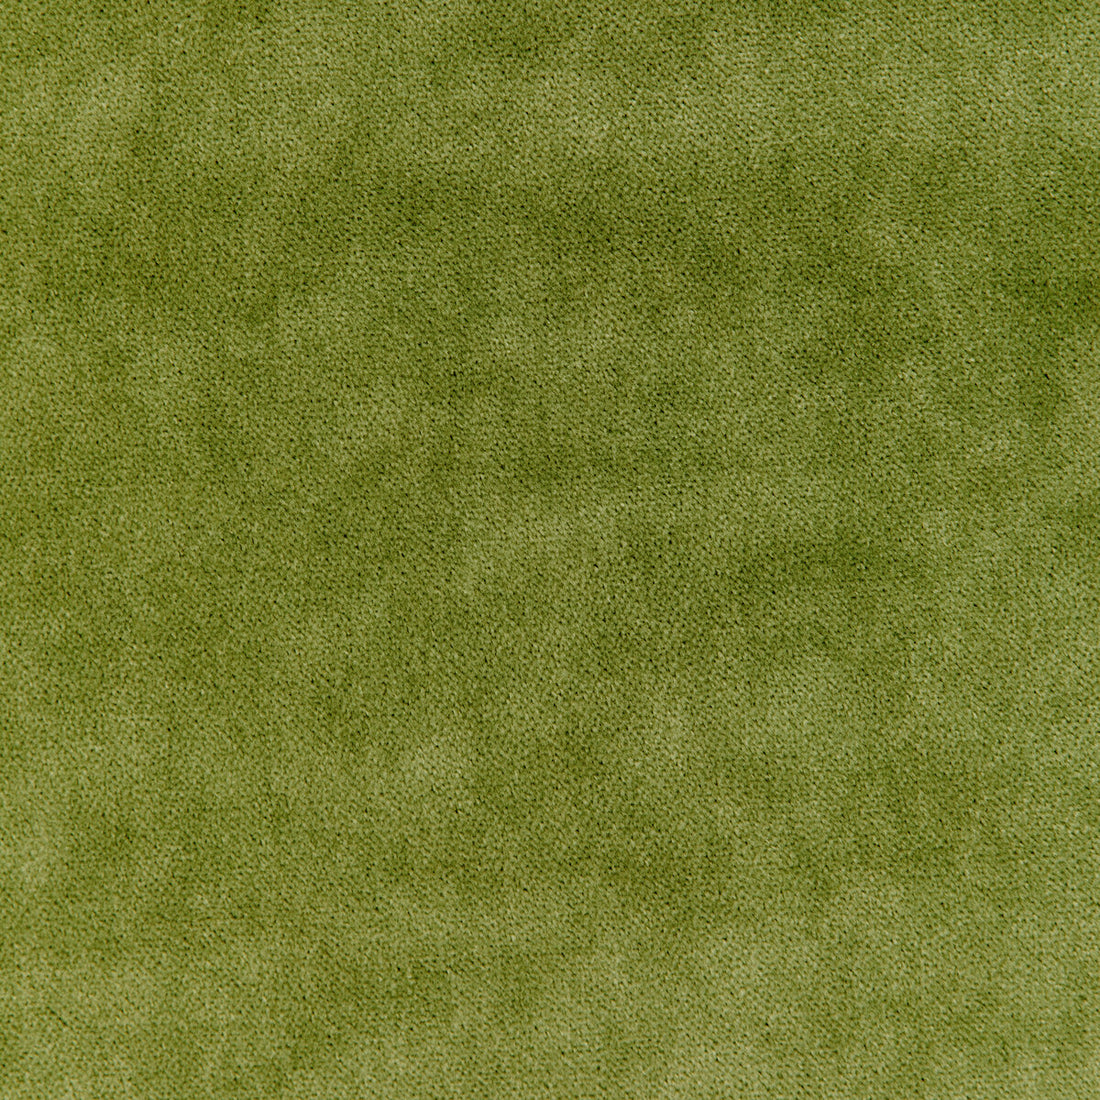 Kravet Basics fabric in 33299-130 color - pattern 33299.130.0 - by Kravet Basics in the The Complete Velvet collection